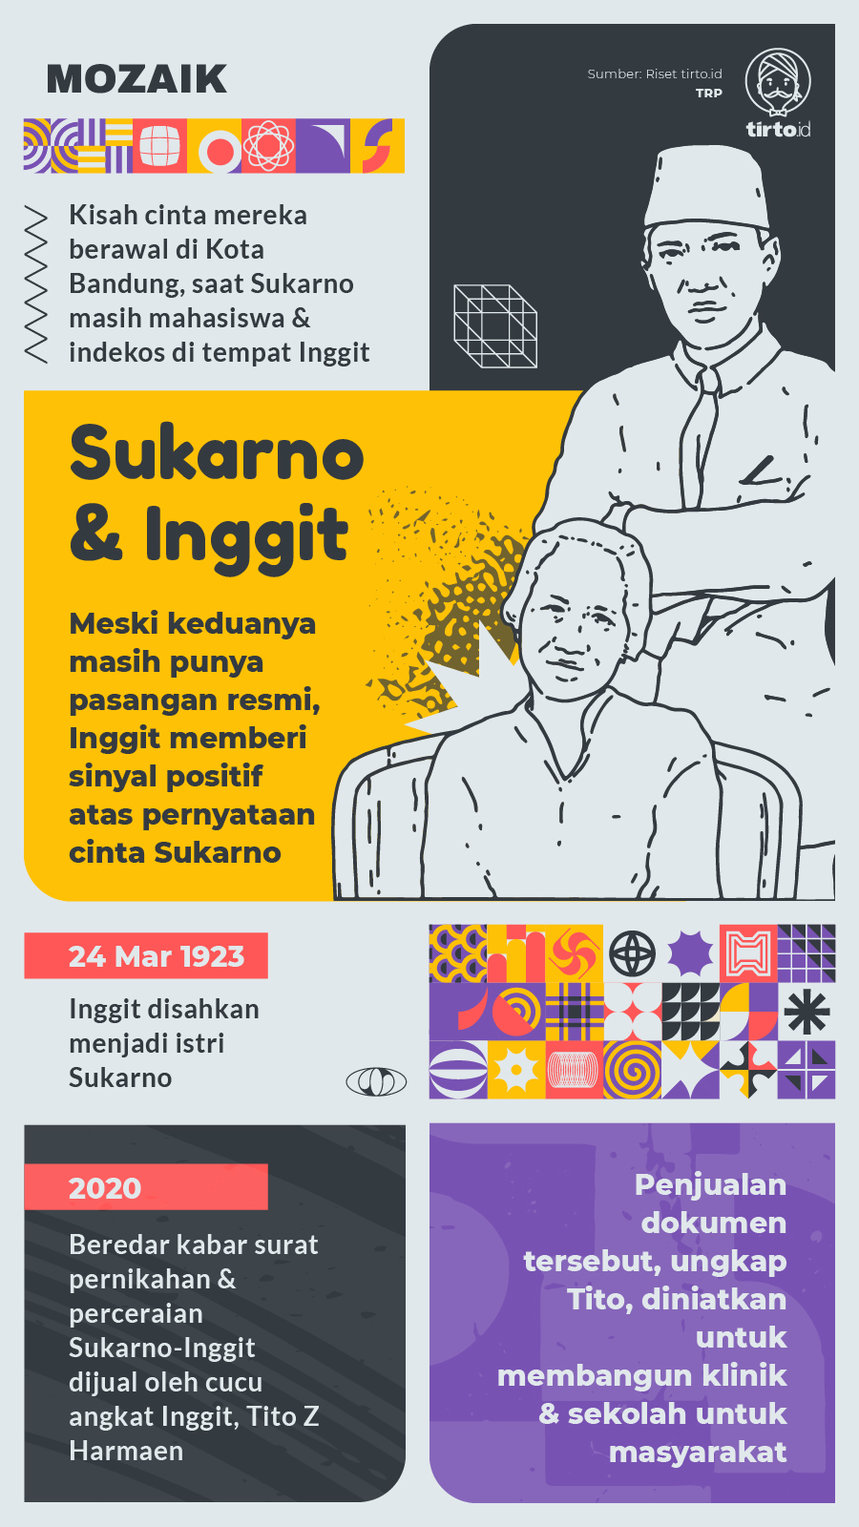 Infografik Mozaik Sukarno dan Inggit